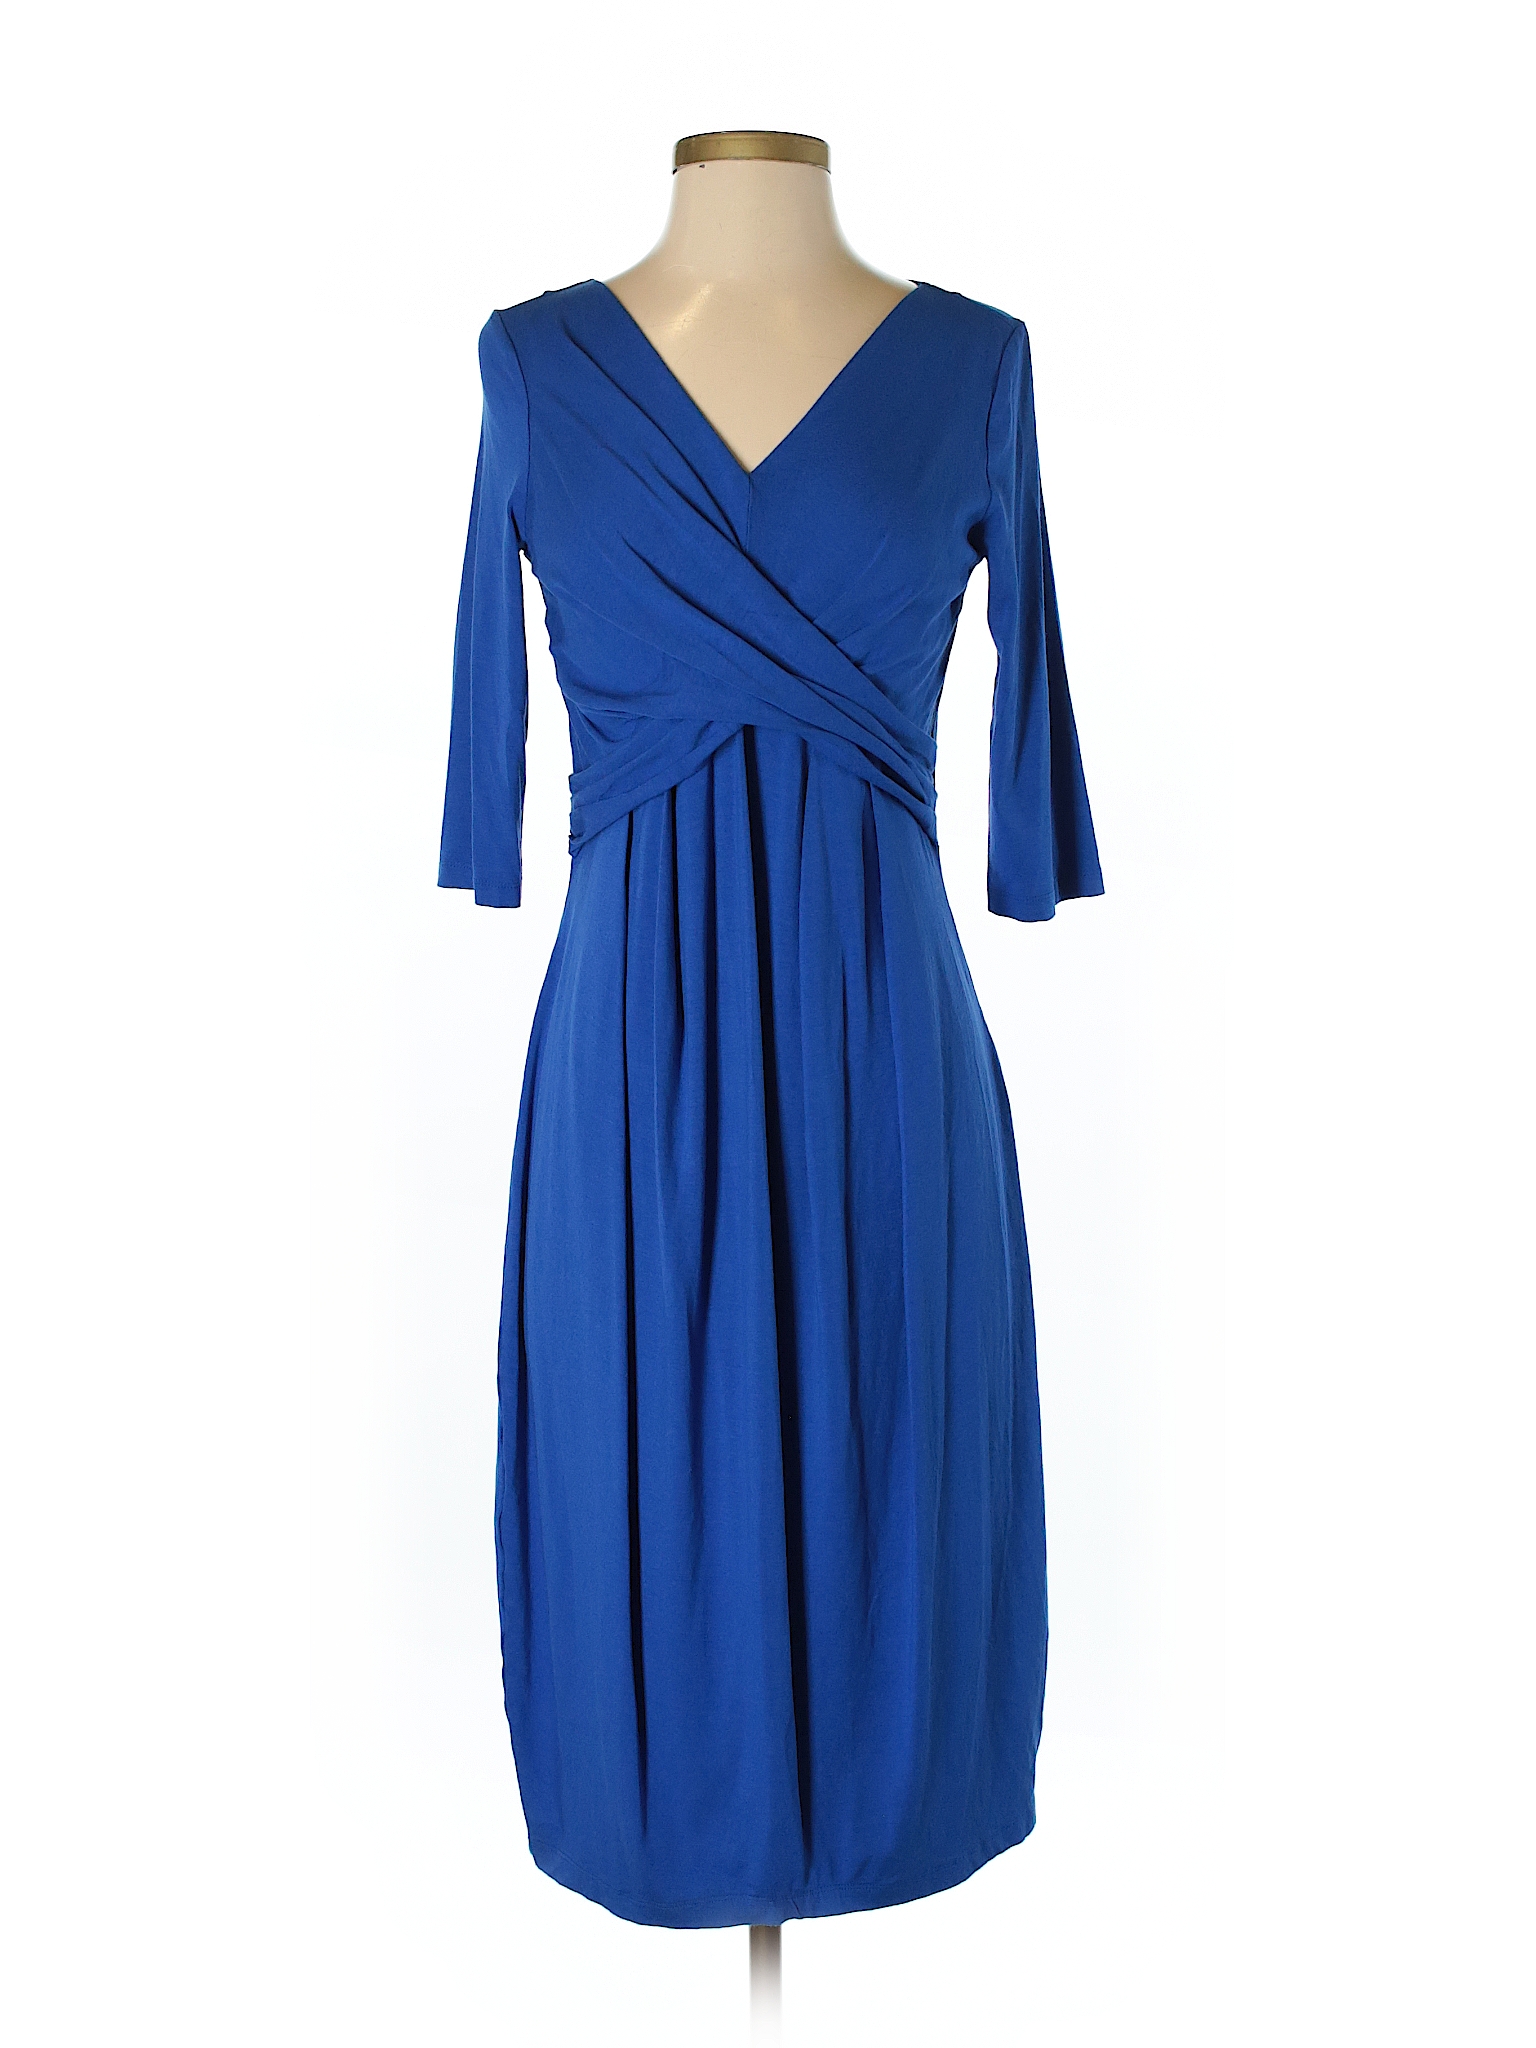 Ronen Chen Solid Dark Blue Casual Dress Size 8 (2) - 79% off | thredUP